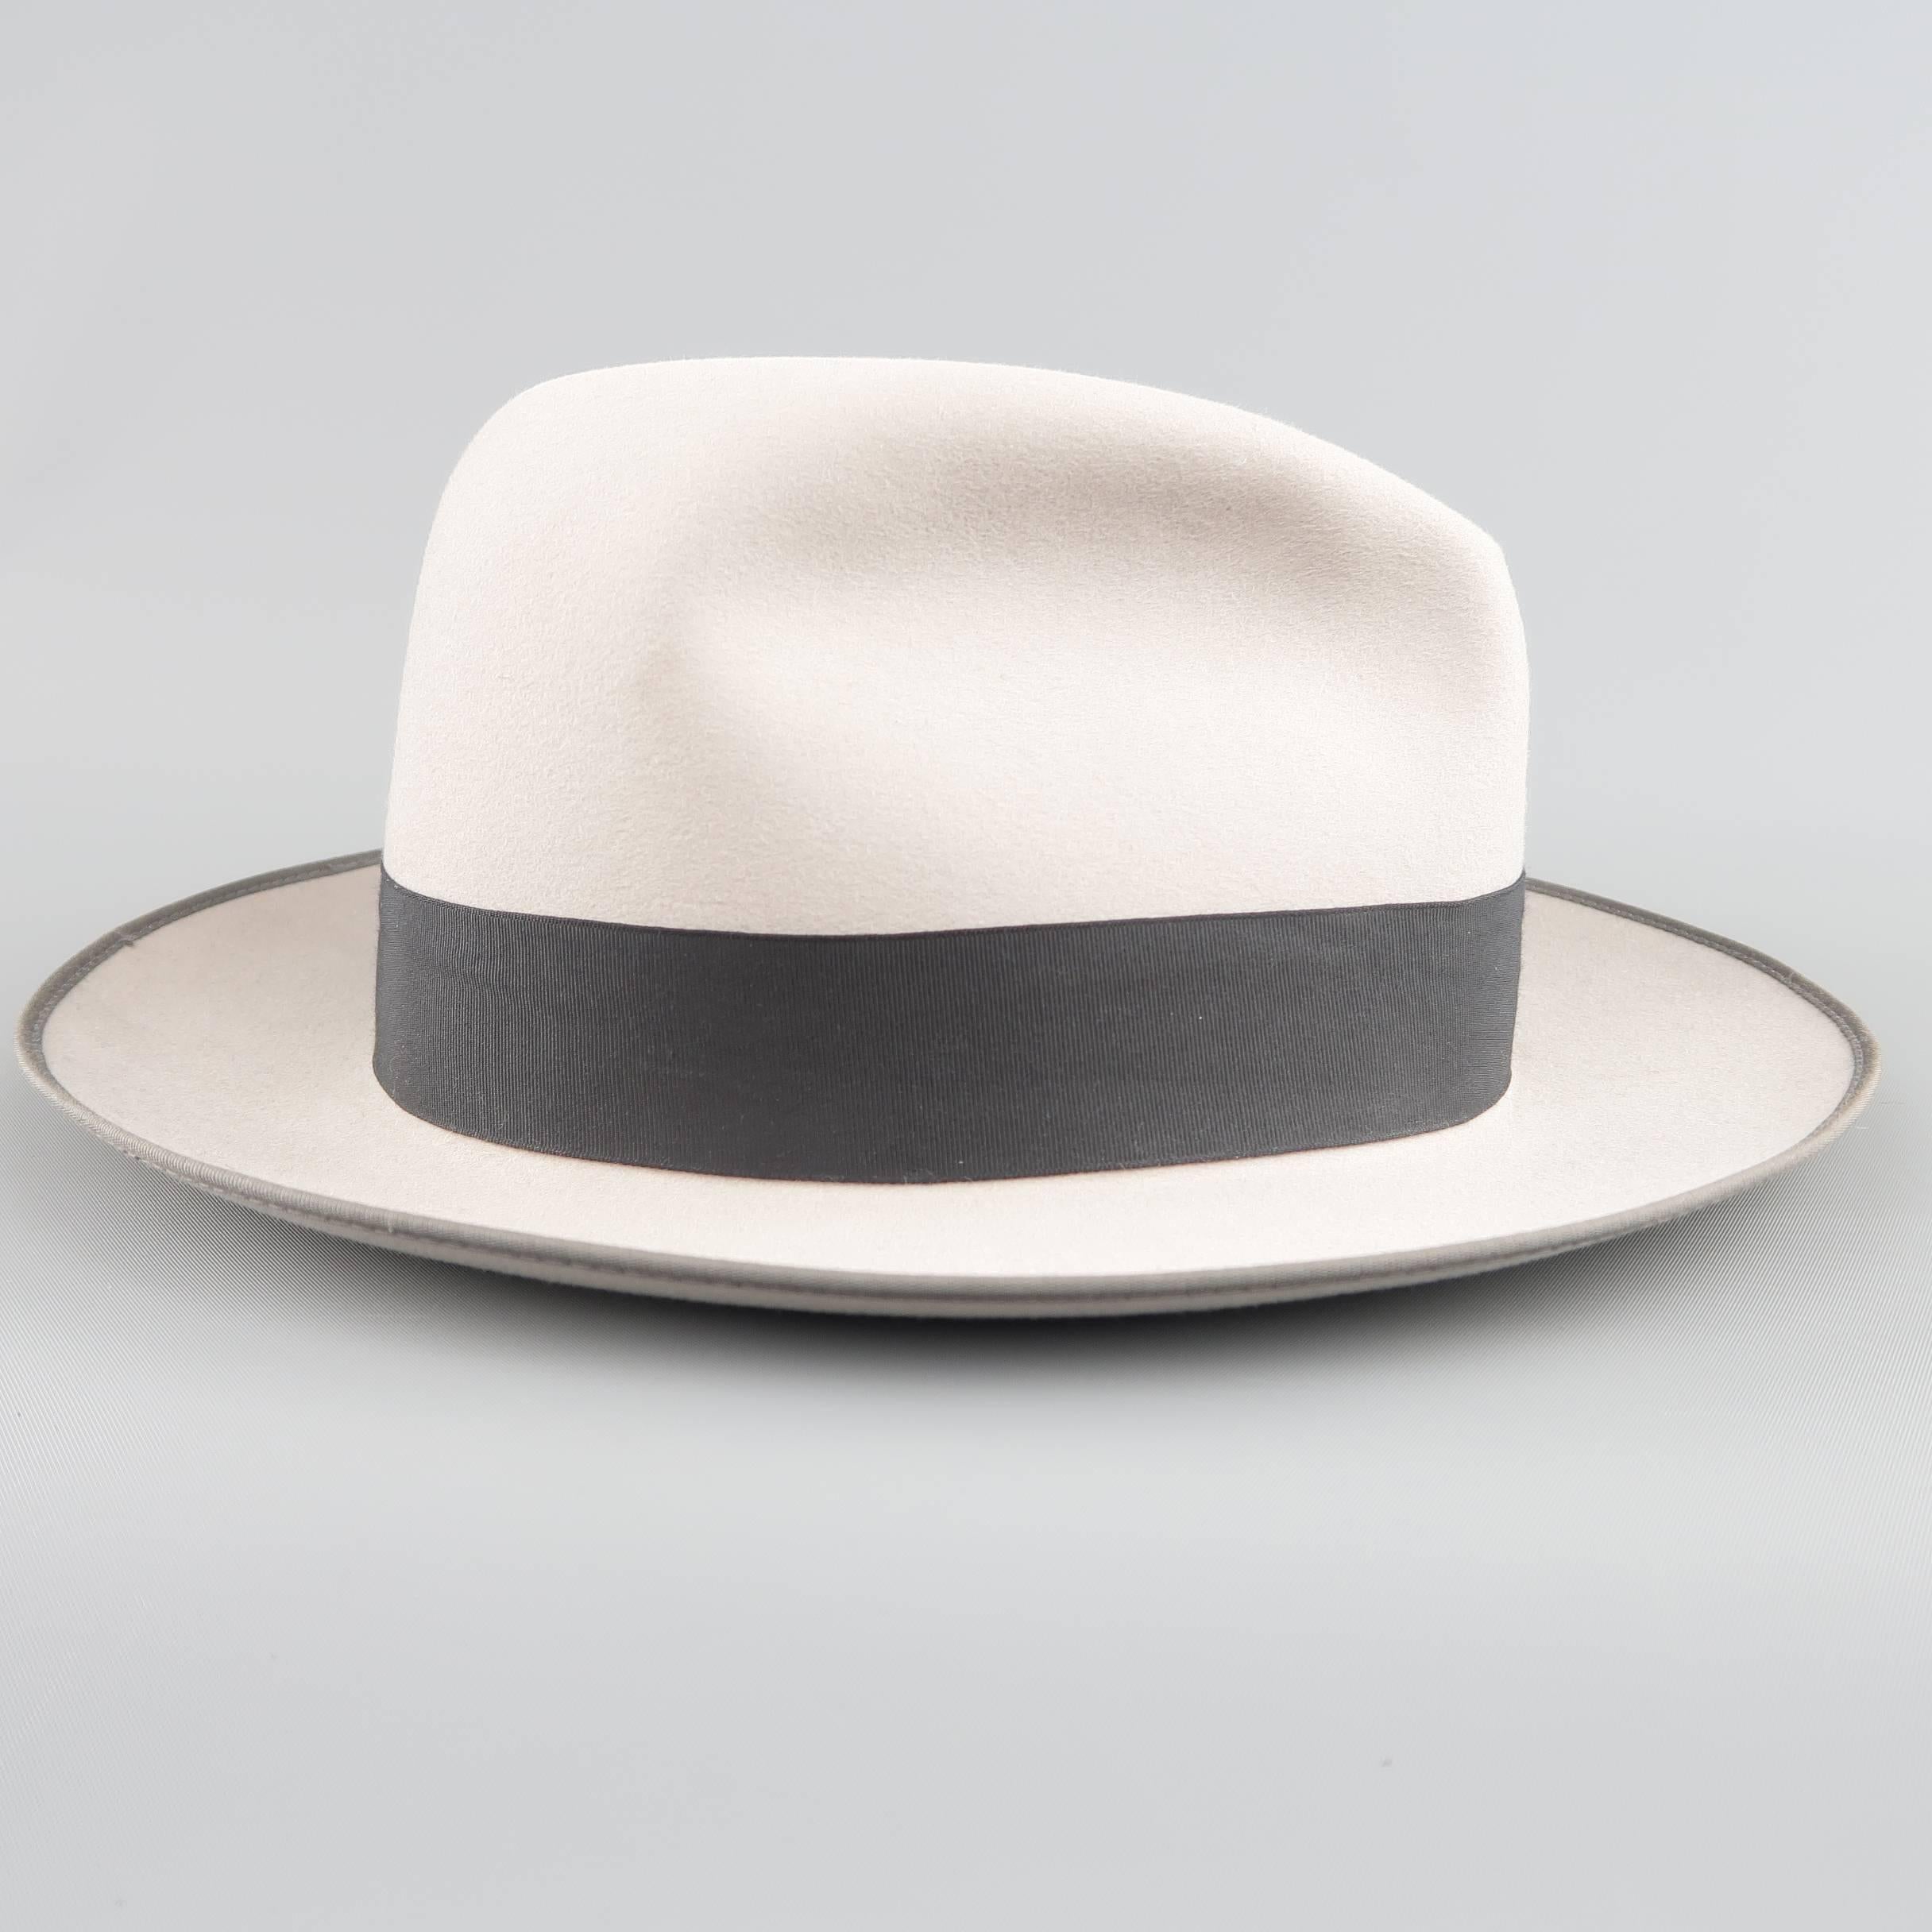 Men's OPTIMO for WILKES BASHFORD Size 7 3/8 Light Gray Felt Fedora Hat With Box